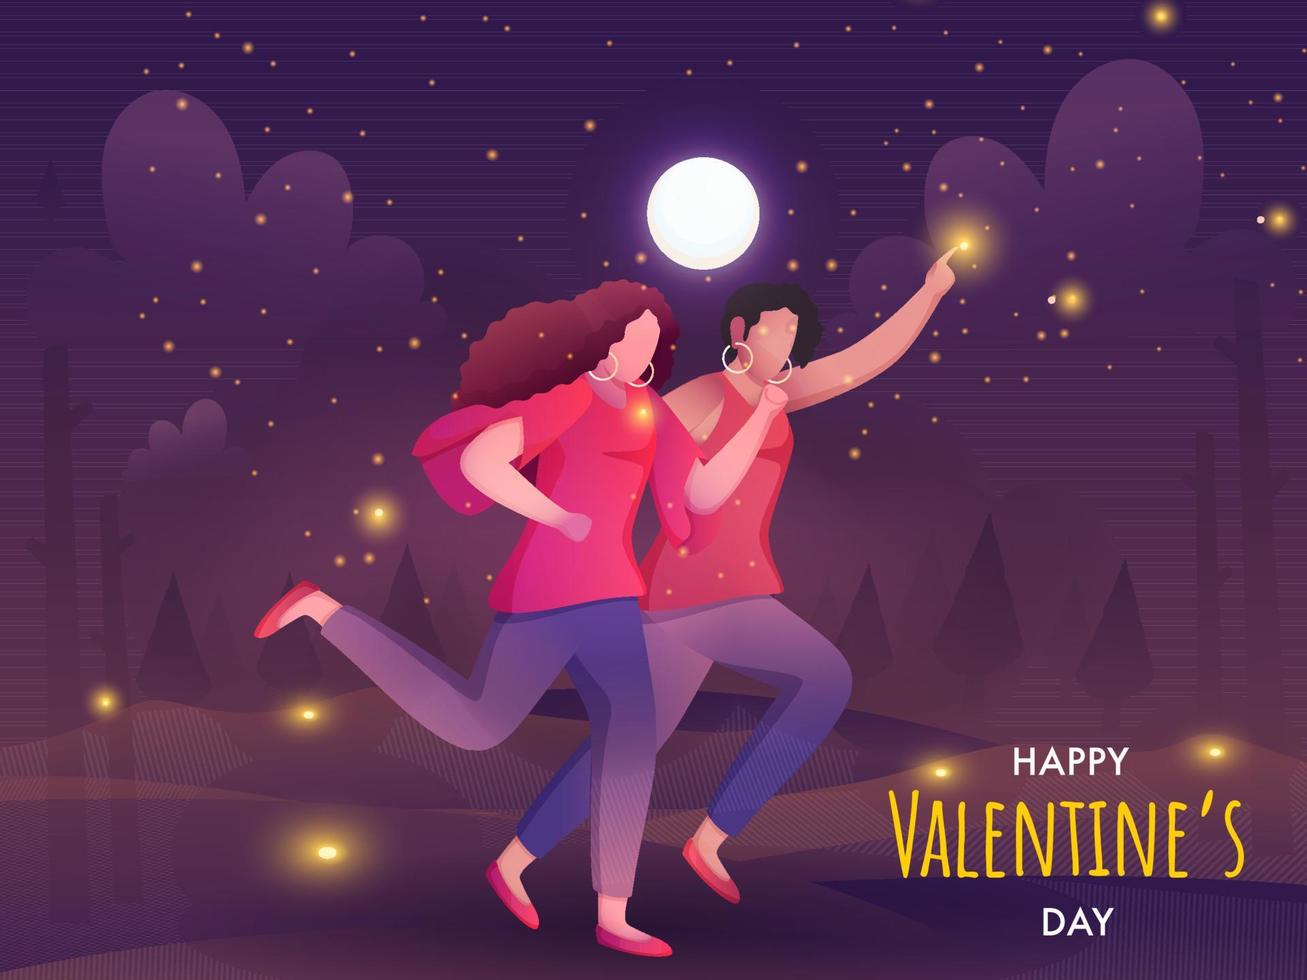 gezichtsloos jong lesbienne vrouw paar rennen Aan vol maan landschap achtergrond voor gelukkig Valentijnsdag dag concept. vector